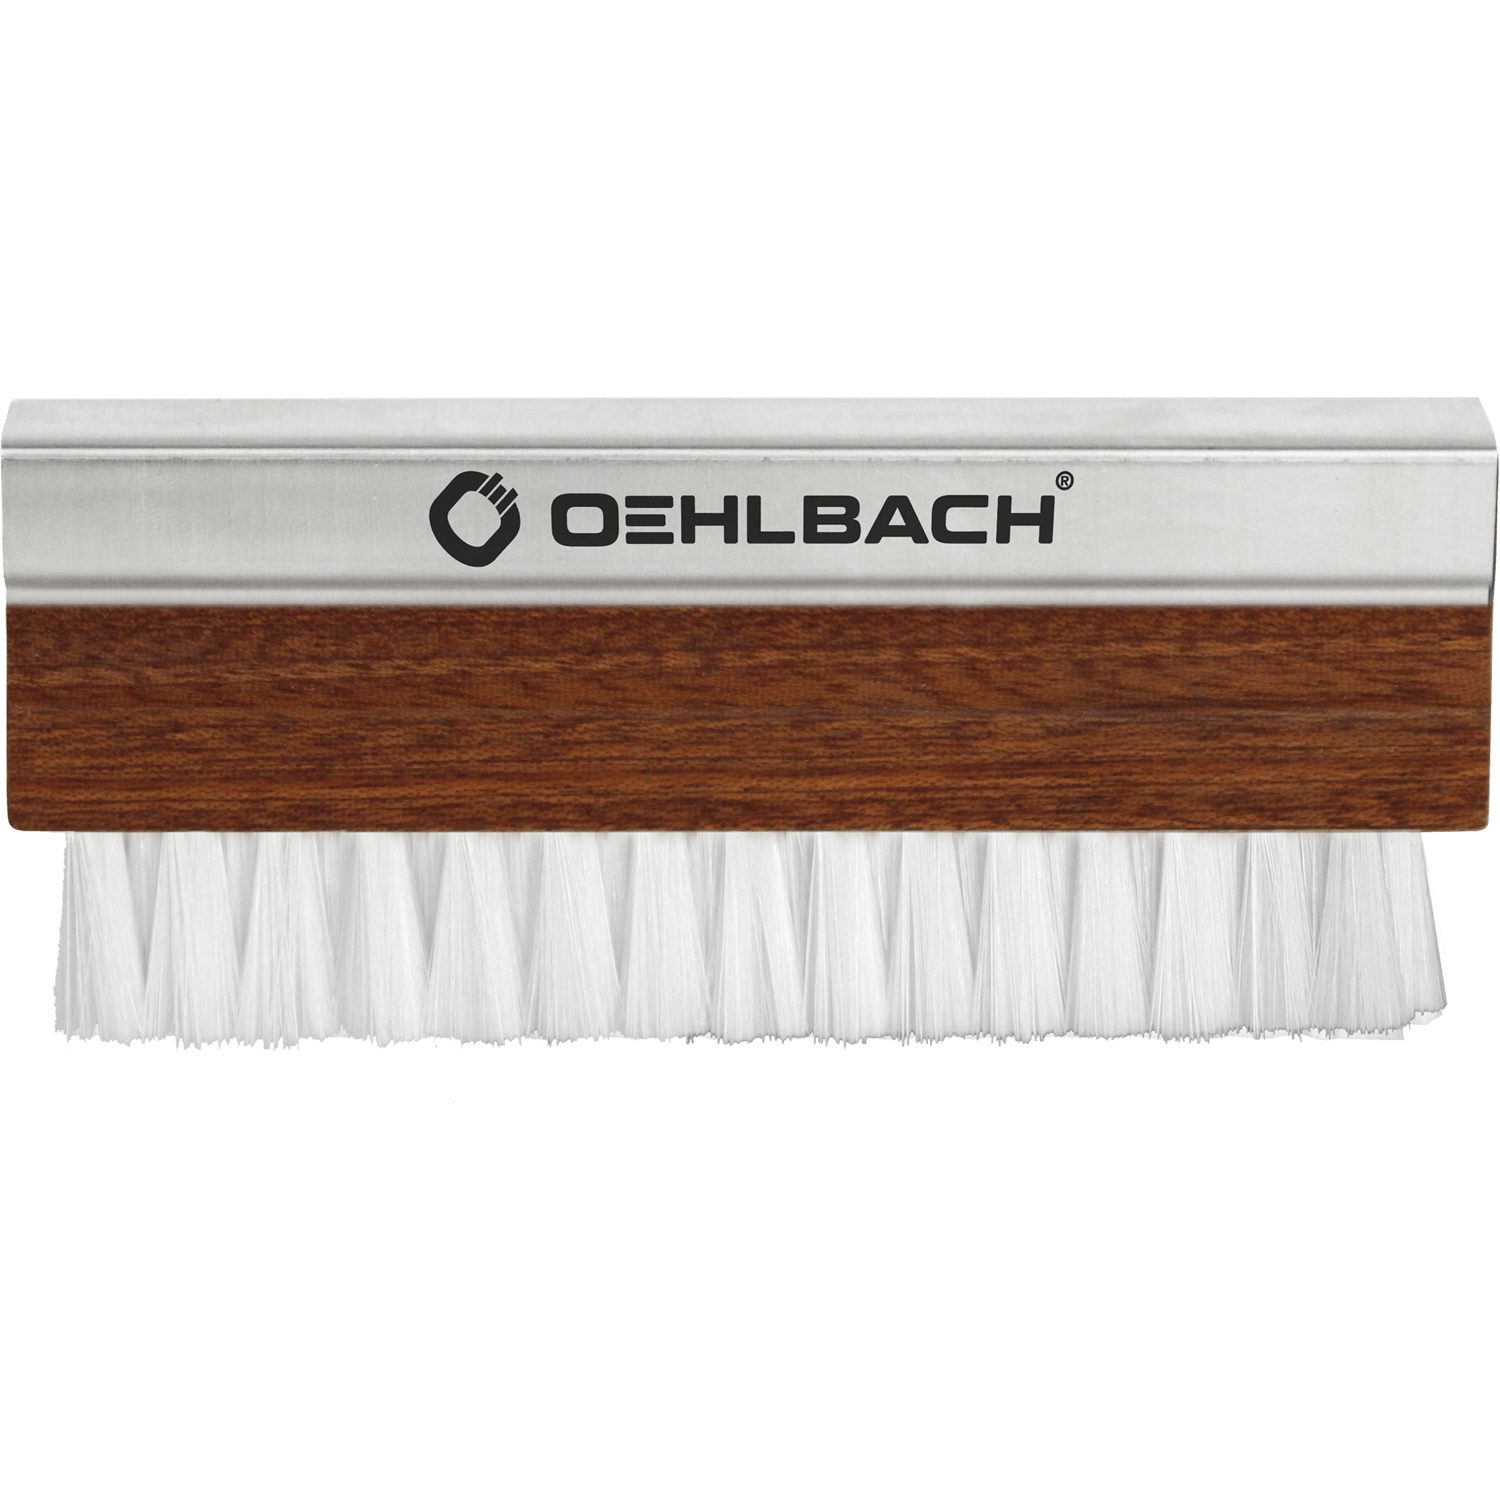 Plattenspieler 2614 Oehlbach Phono Schallplattenbürste Pro Brush